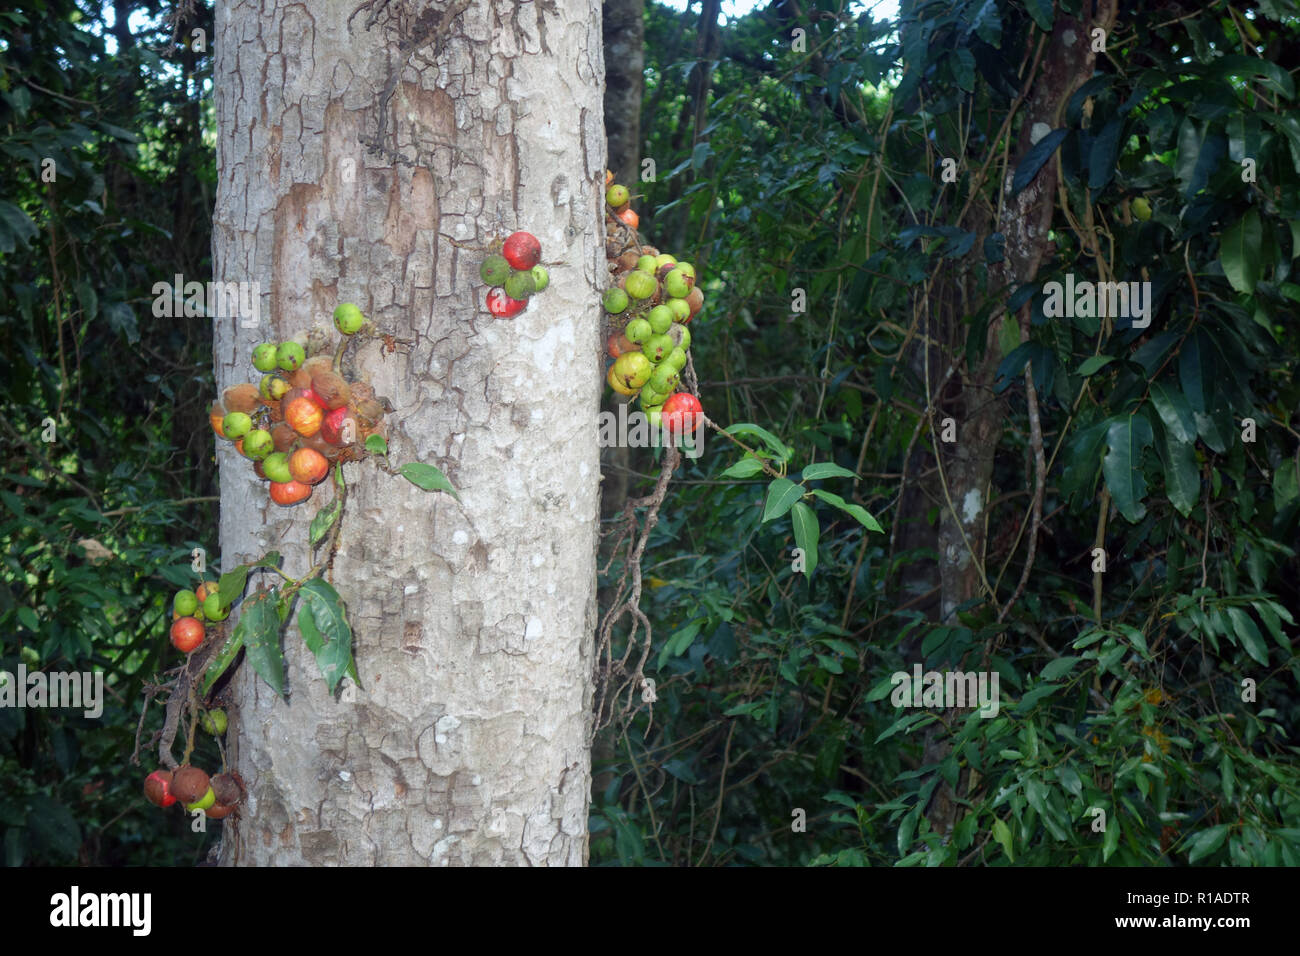 La fructification des figues sur le tronc d'arbre, Wooroonooran National Park, Queensland, Australie Banque D'Images